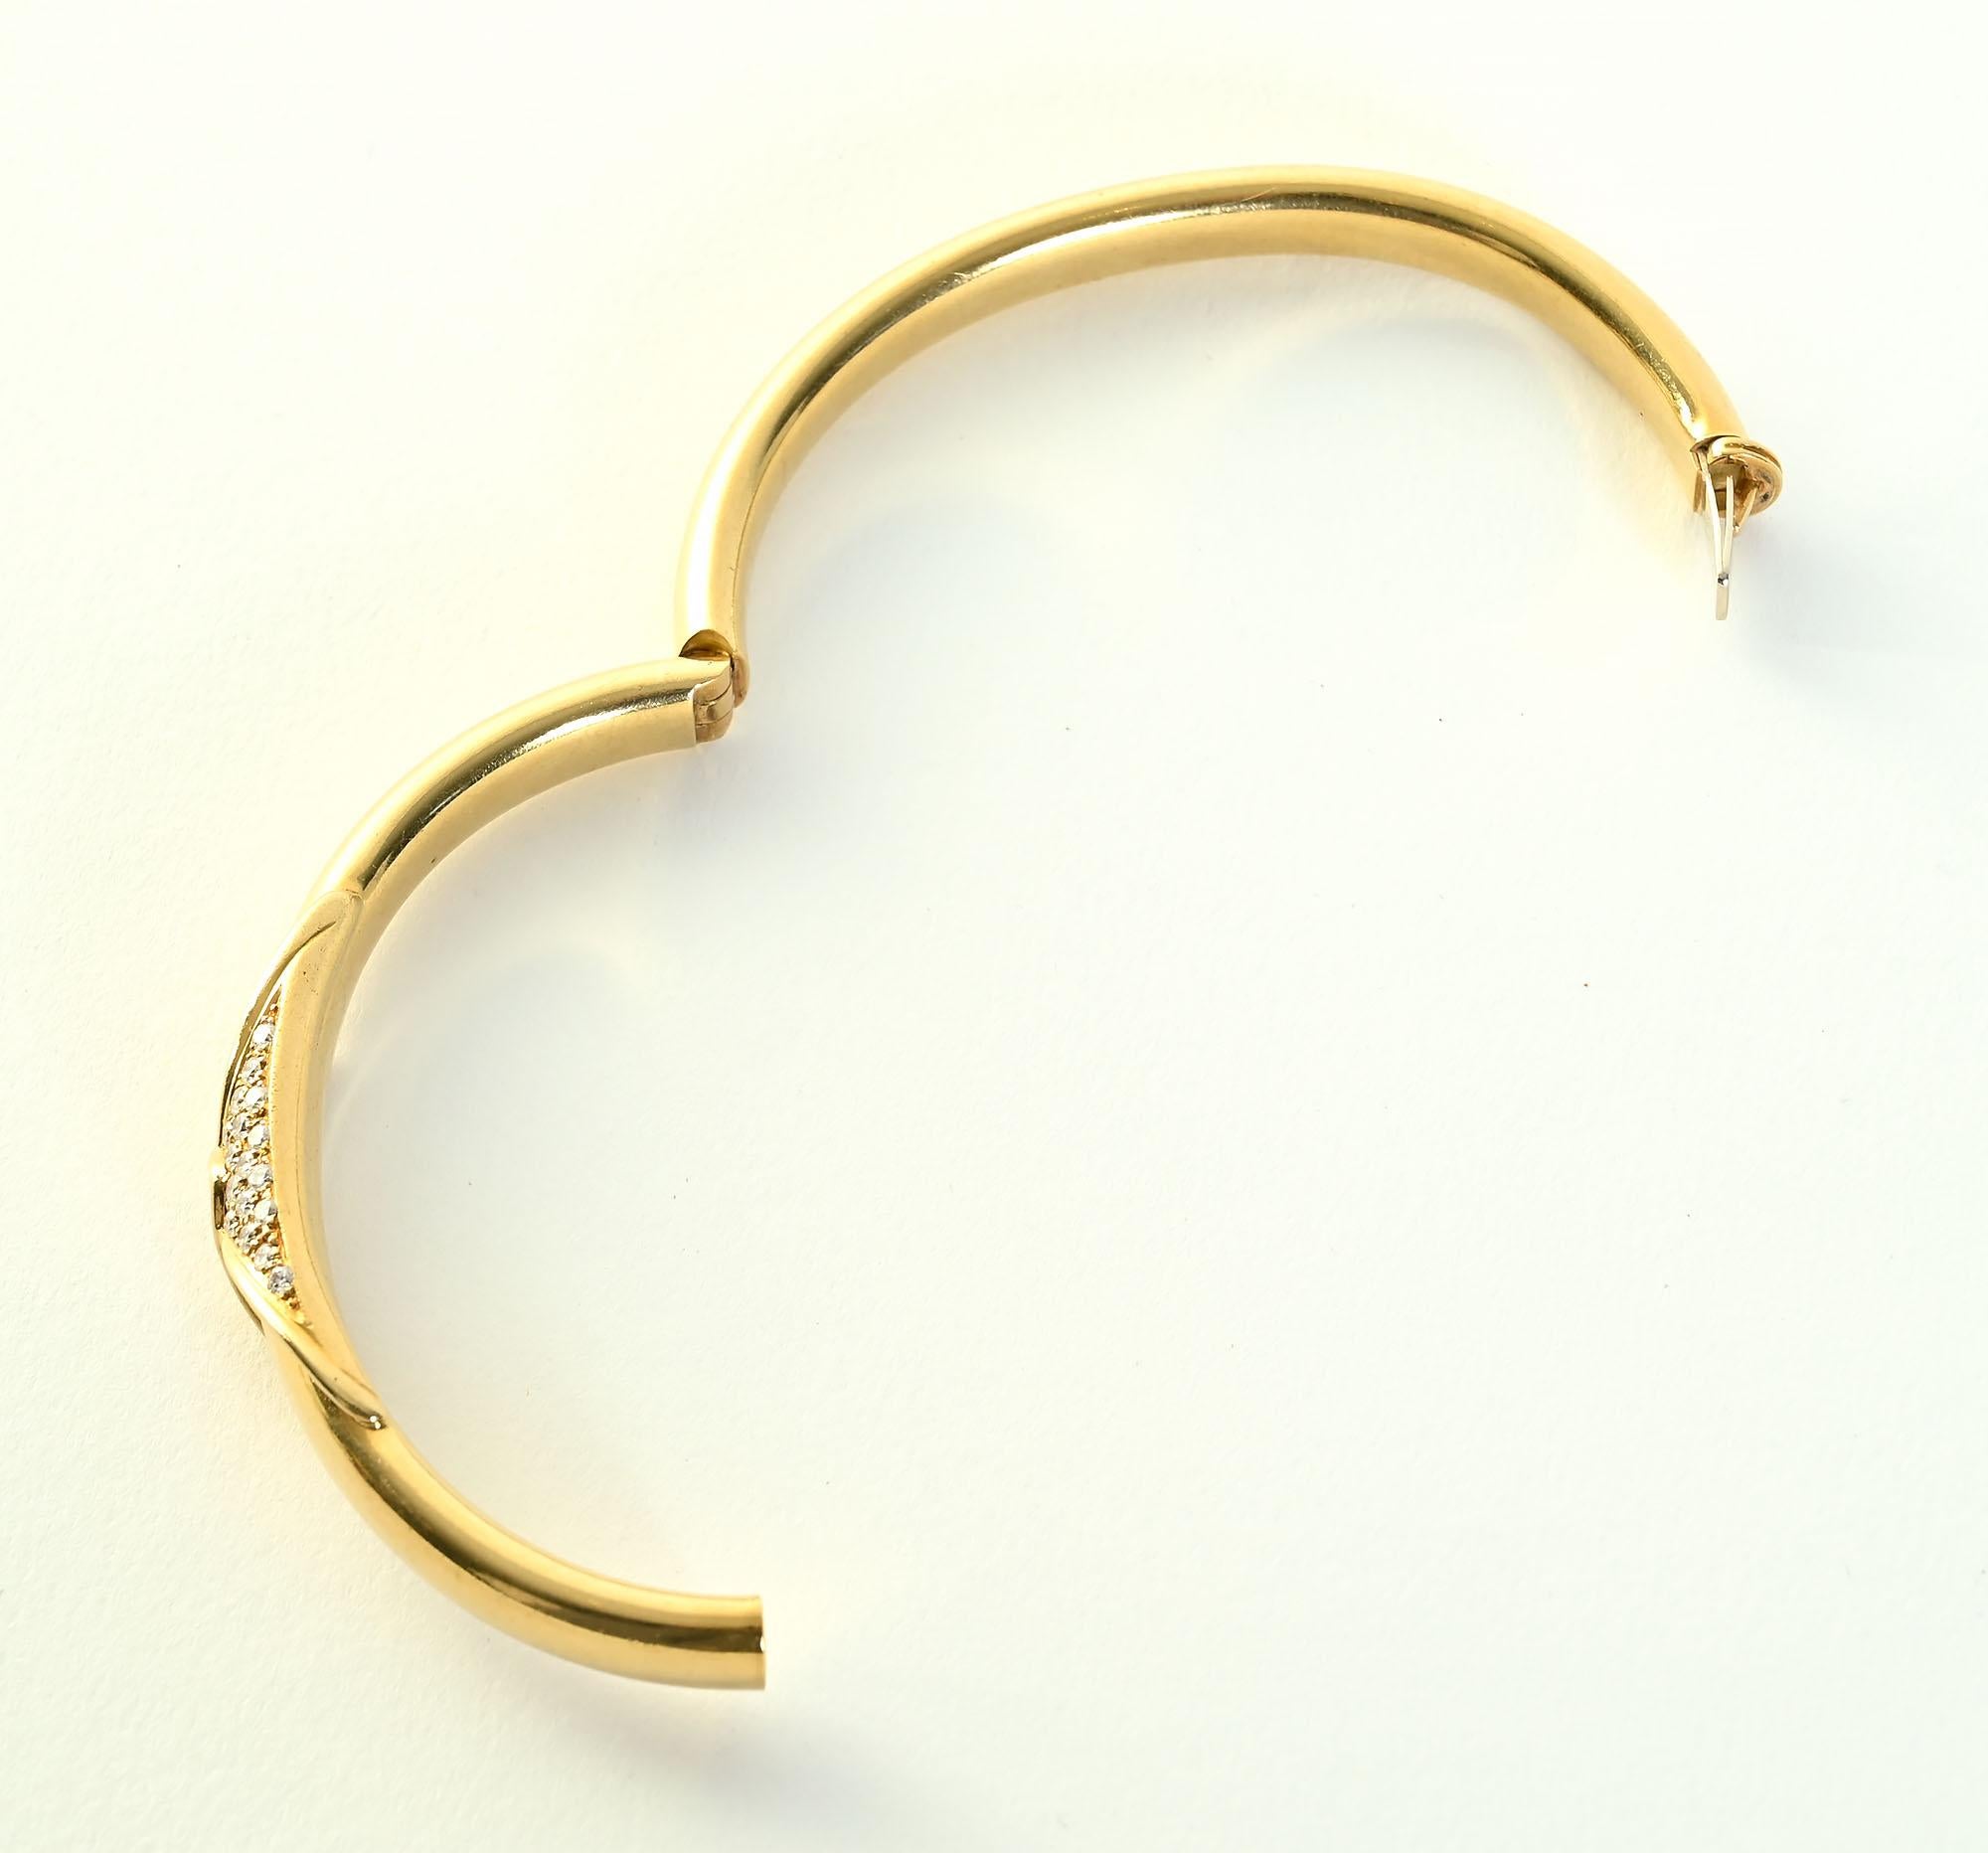 birks gold bracelet